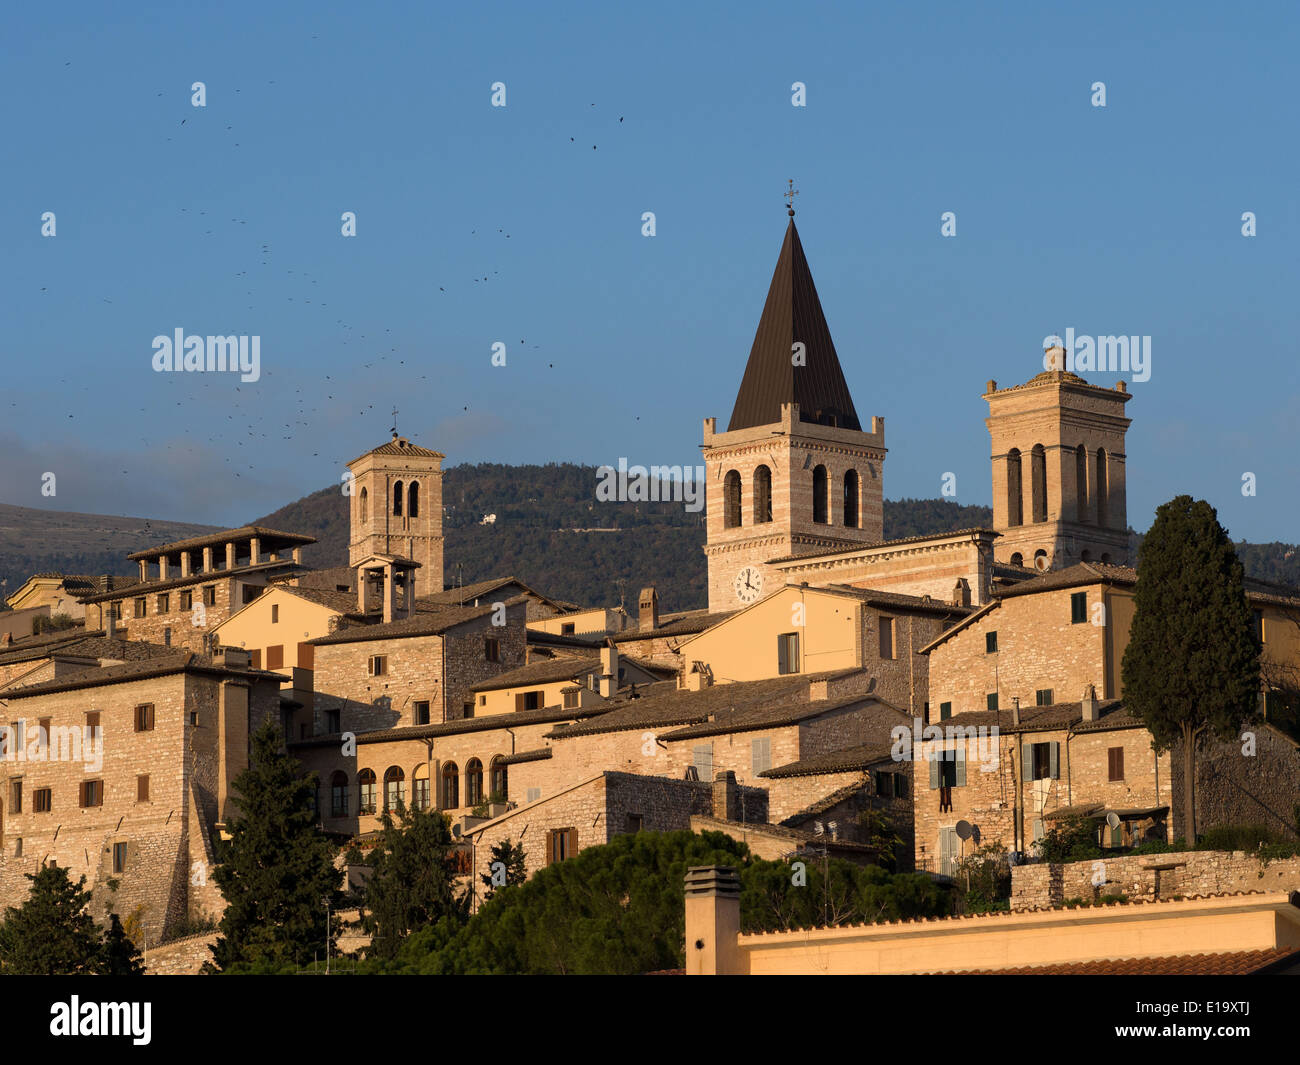 view of Spello, Italy Stock Photo - Alamy